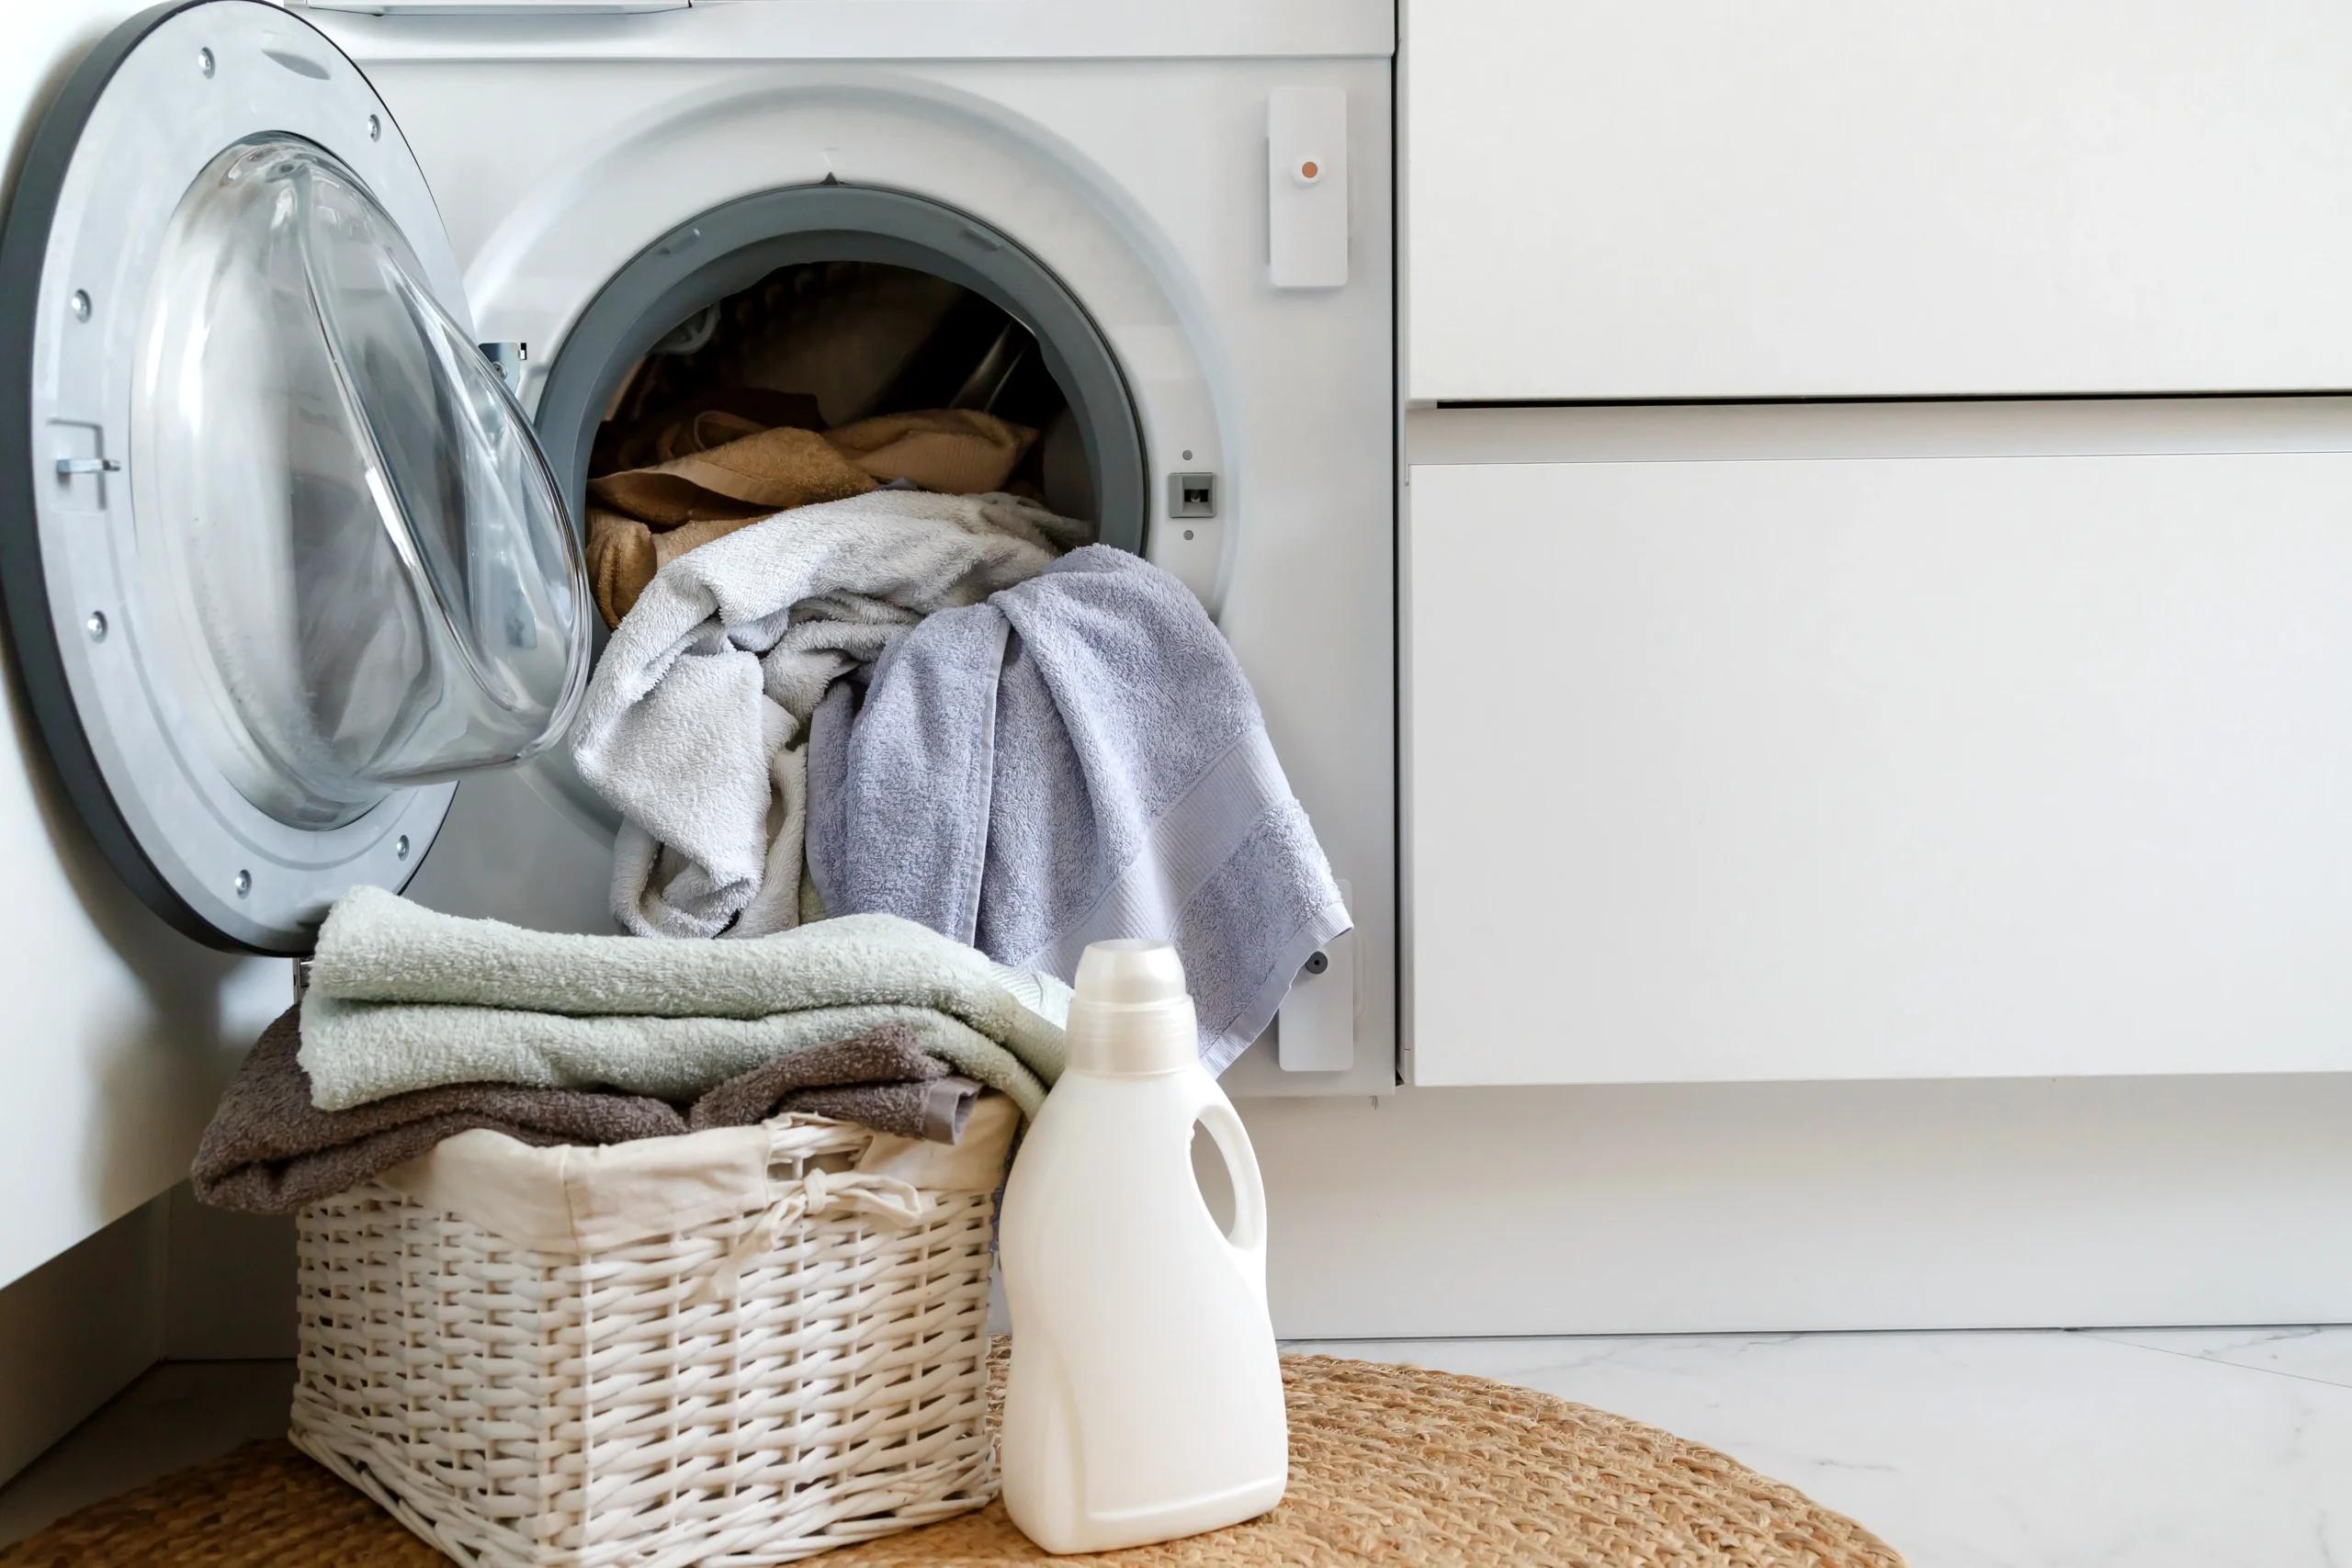 lavar ropa de trabajo en lavadora - Cómo se lava la ropa de trabajo